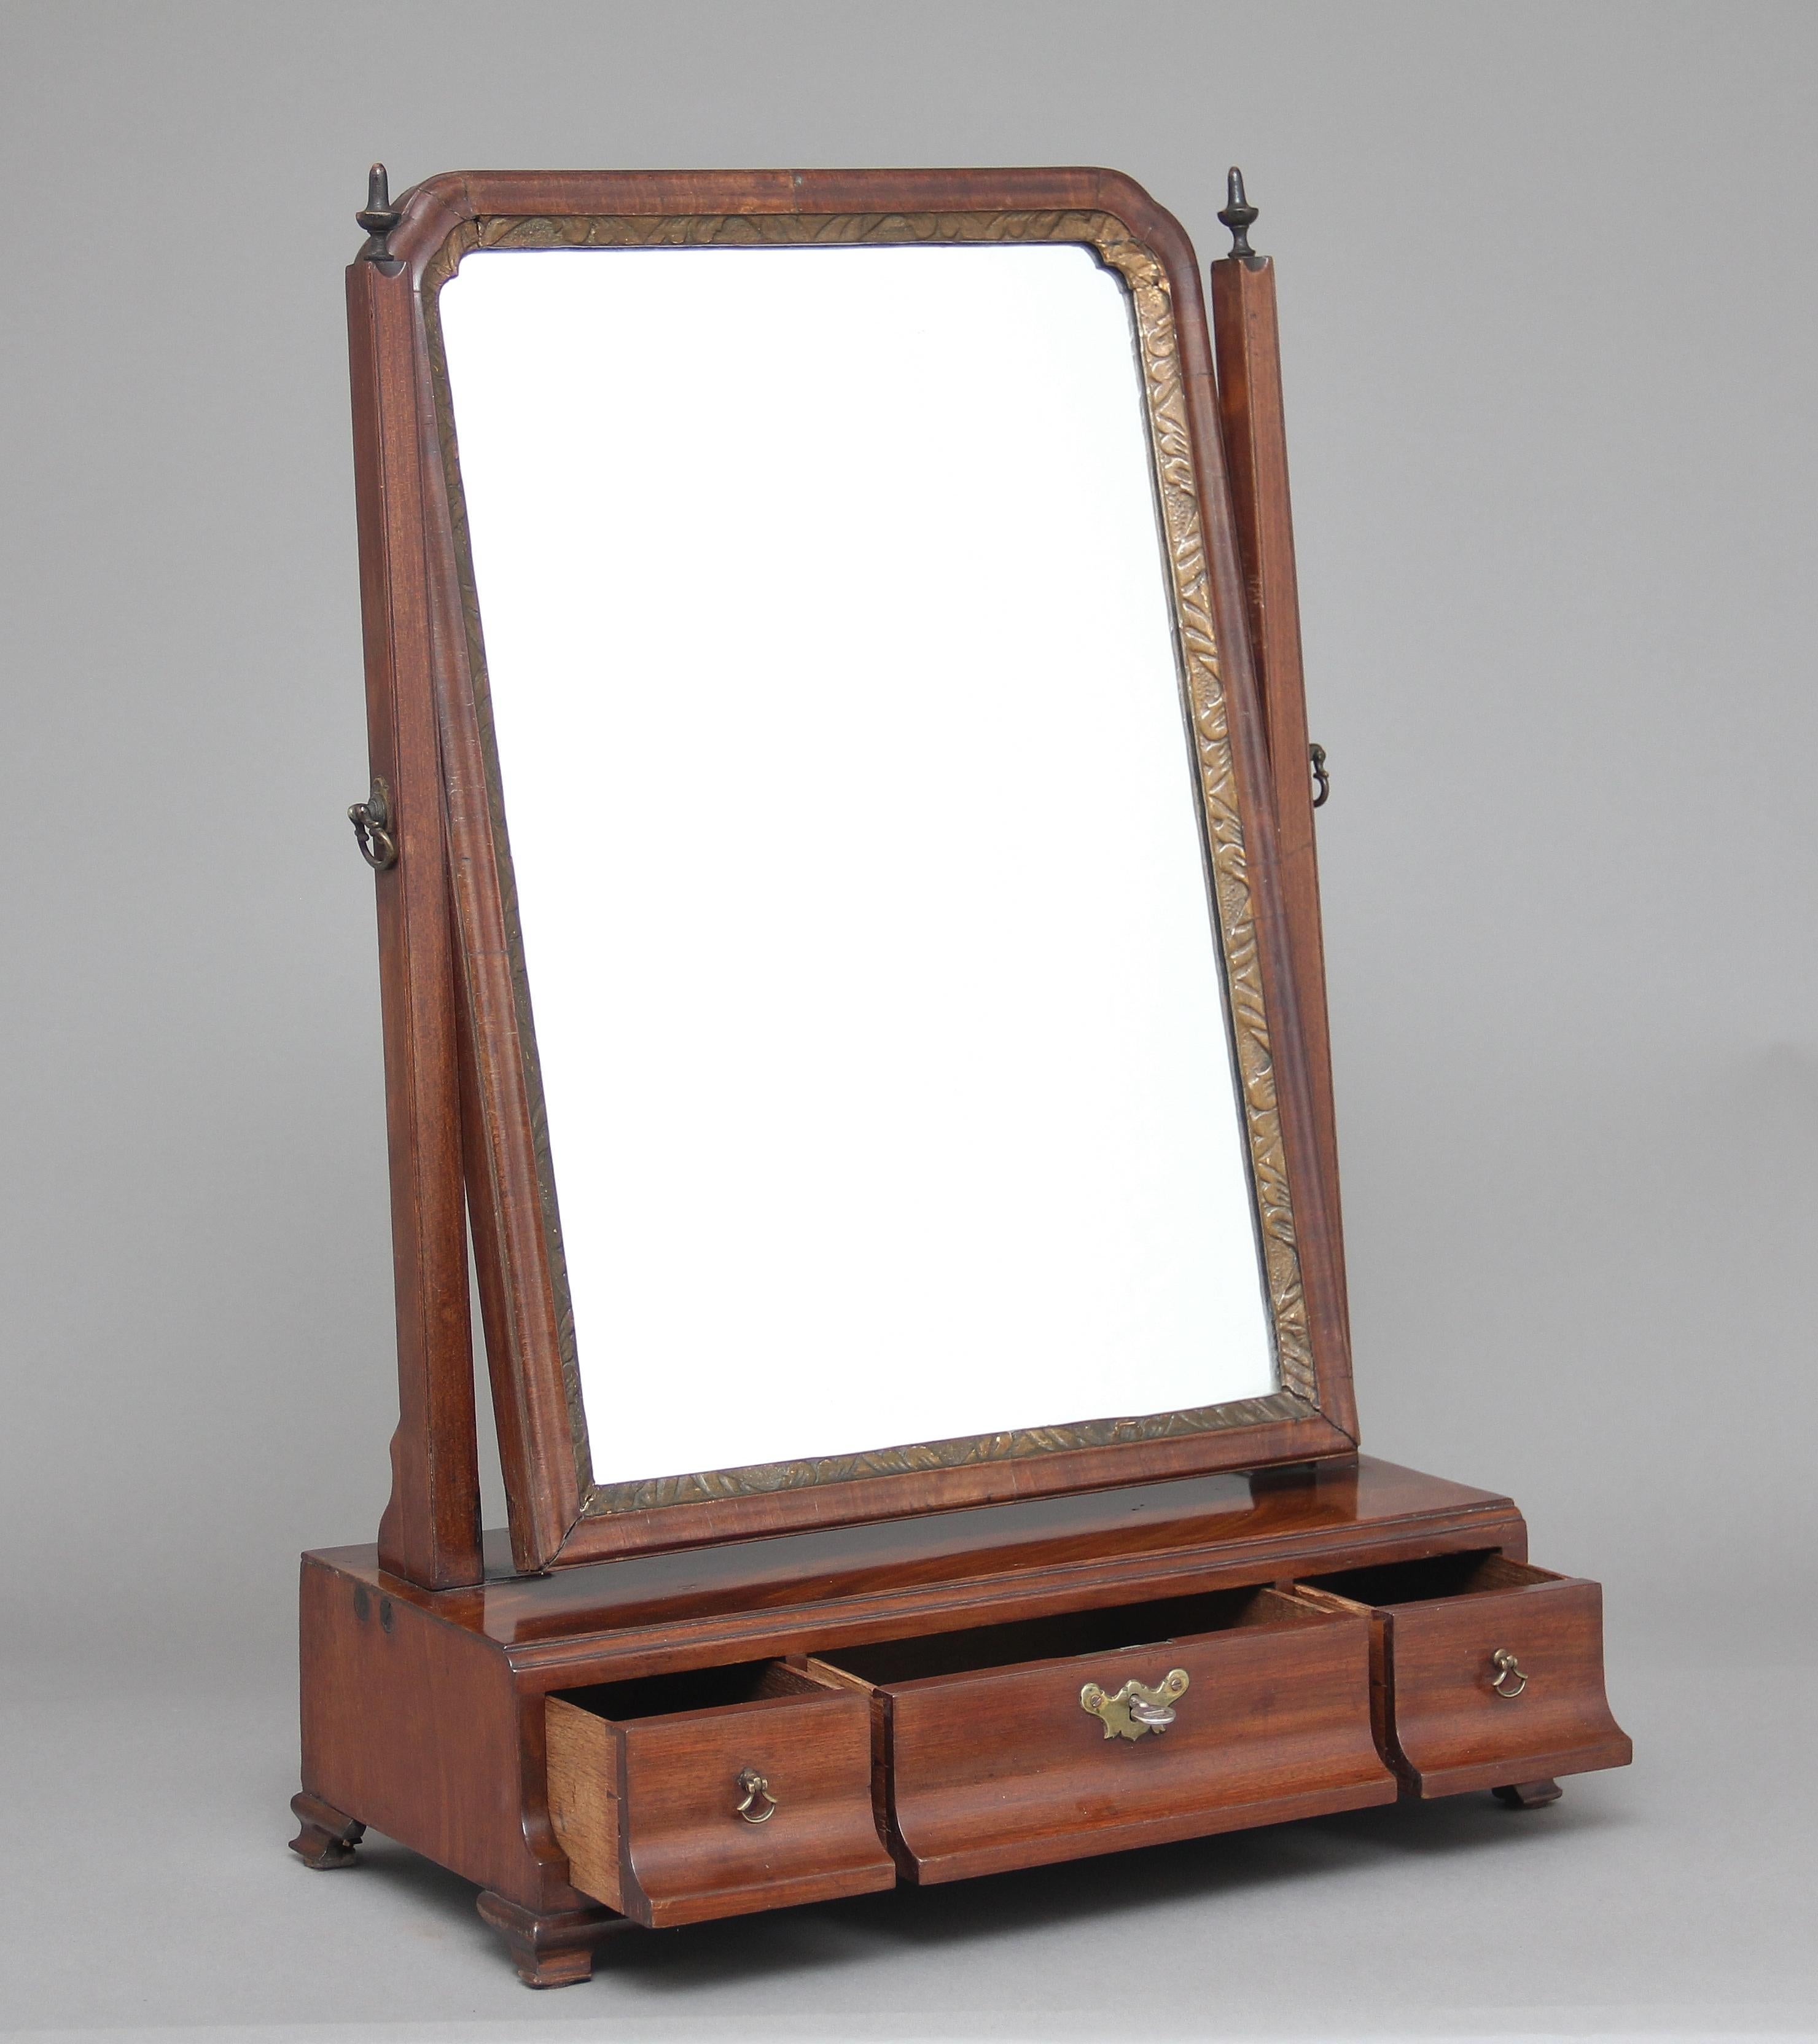 Frühe 19. Jahrhundert Mahagoni Schminktisch / Toilette Spiegel, mit einem schwenkbaren Spiegel, der Rahmen mit hölzernen Kreuzblumen auf der Oberseite verziert, die Basis Abschnitt mit drei Eiche gefüttert Schubladen, stehen auf kleinen ogee Füße,